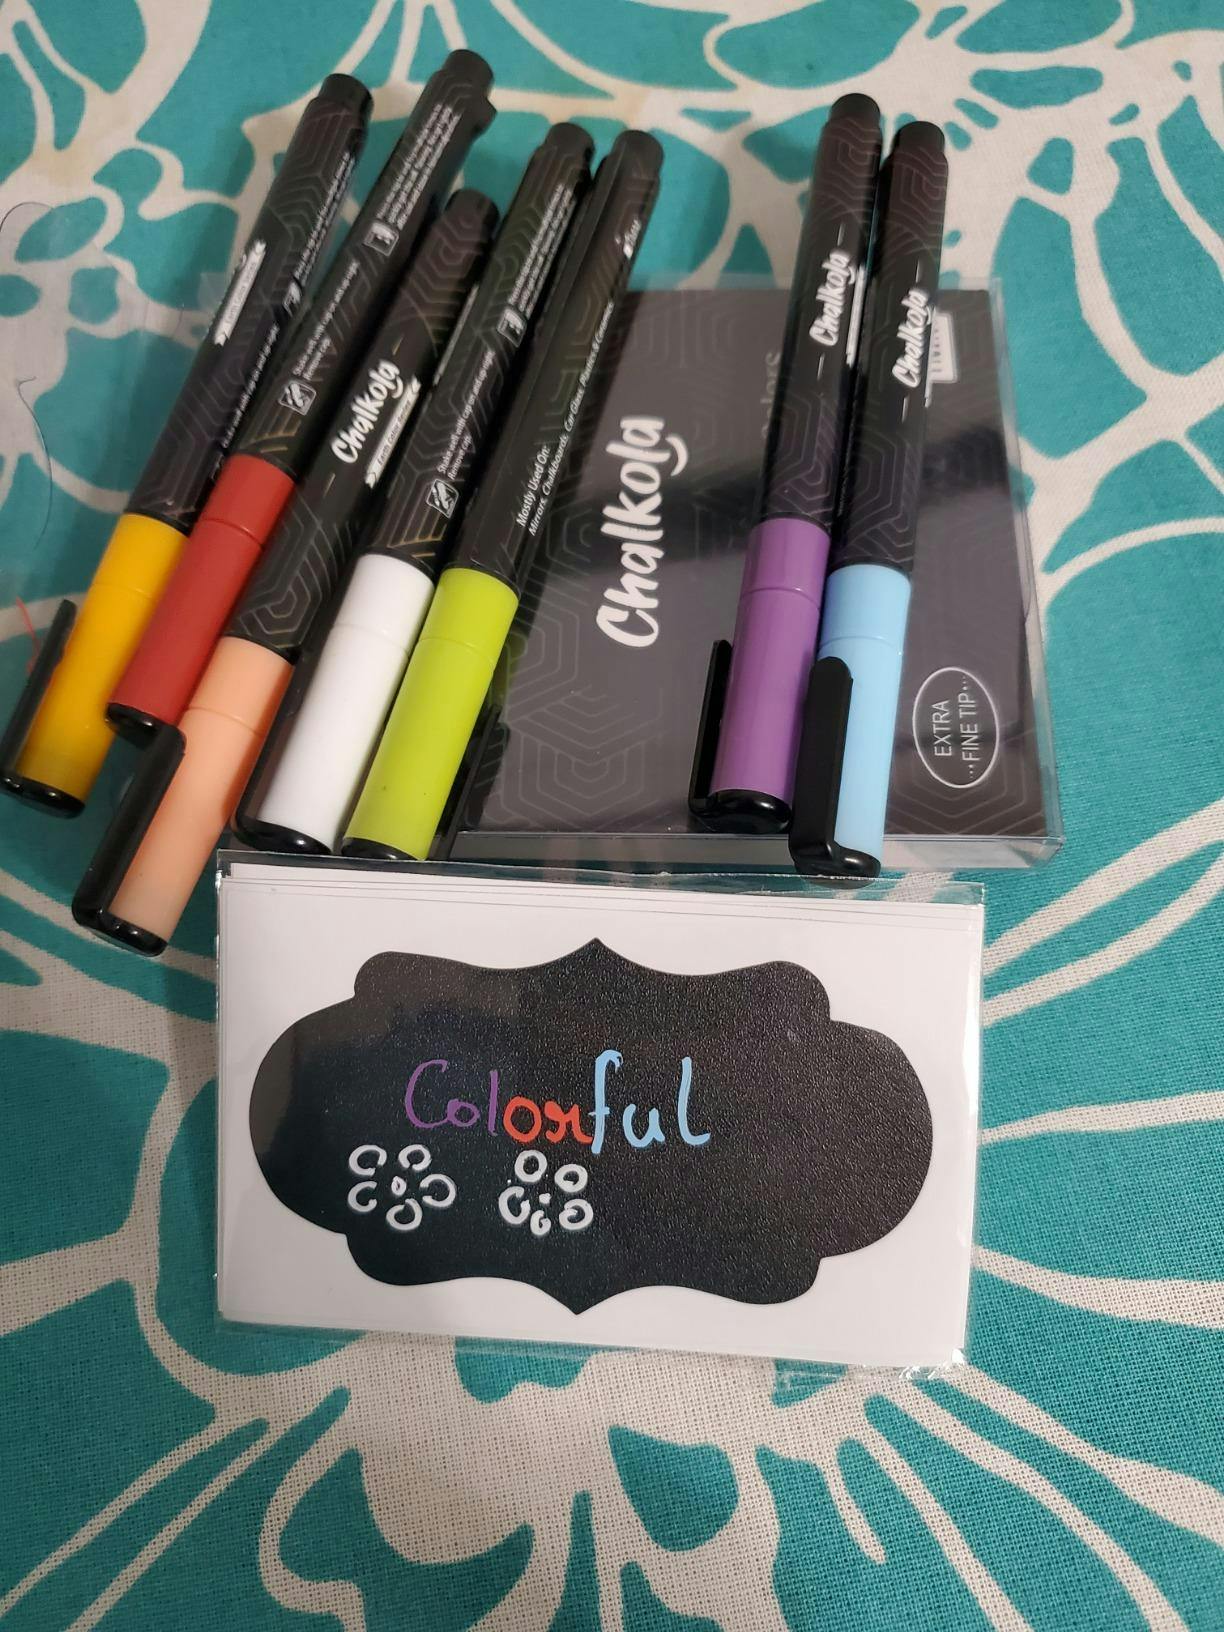 Mr. Pen- Chalk Markers, 6 Pack, Assorted Color, Chalk Markers For  Blackboard, Li